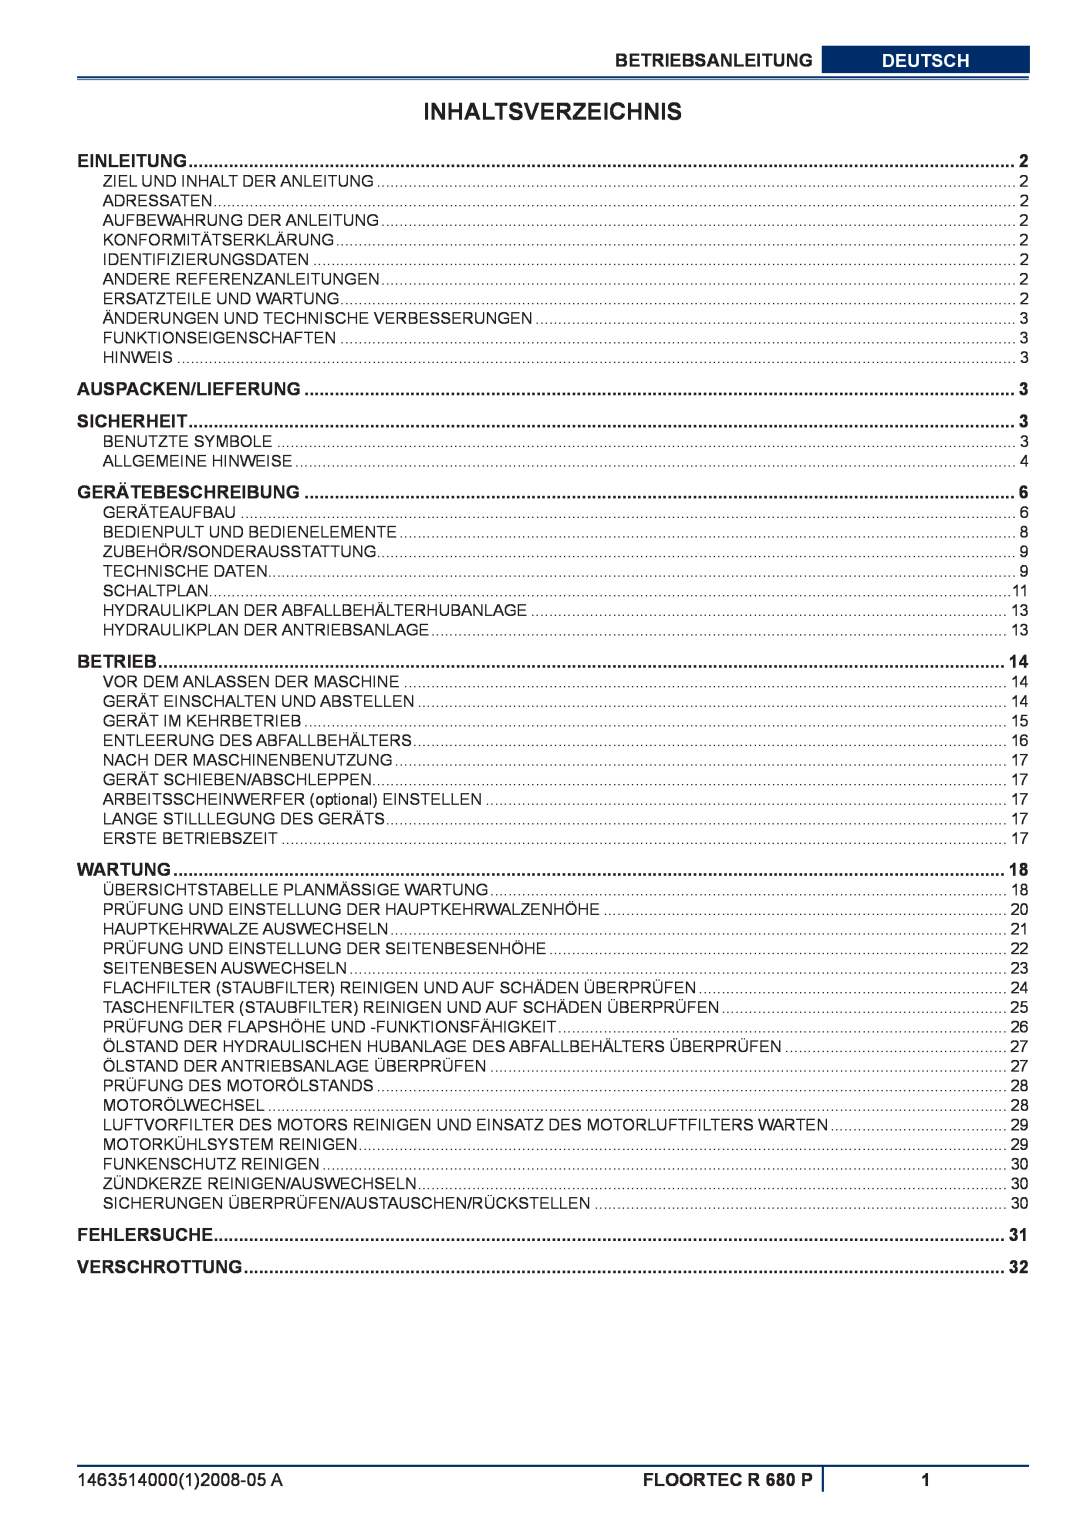 Nilfisk-ALTO manuel dutilisation Inhaltsverzeichnis, Betriebsanleitung, Deutsch, FLOORTEC R 680 P 